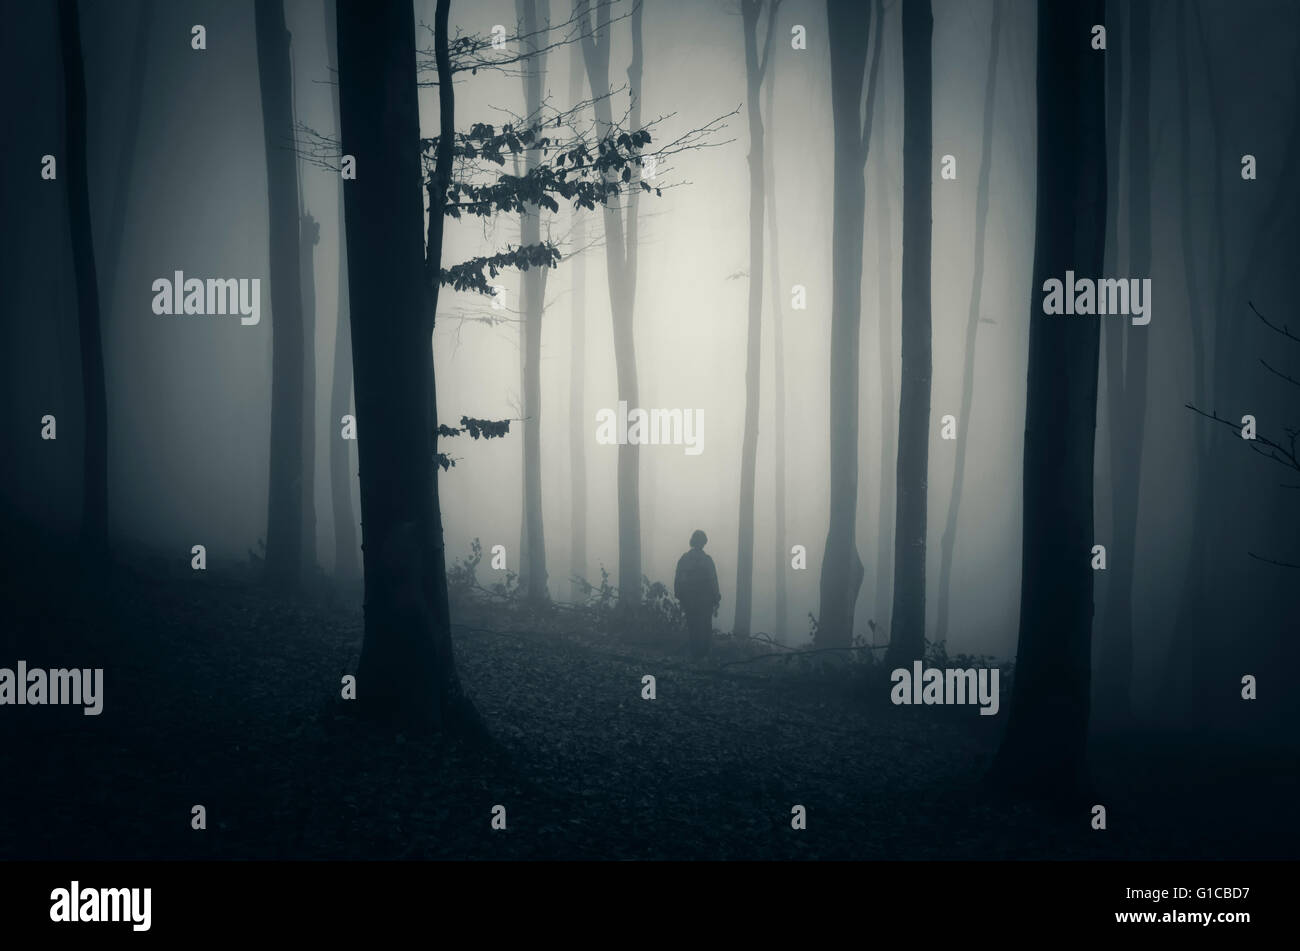 man in forest dark landscape Stock Photo